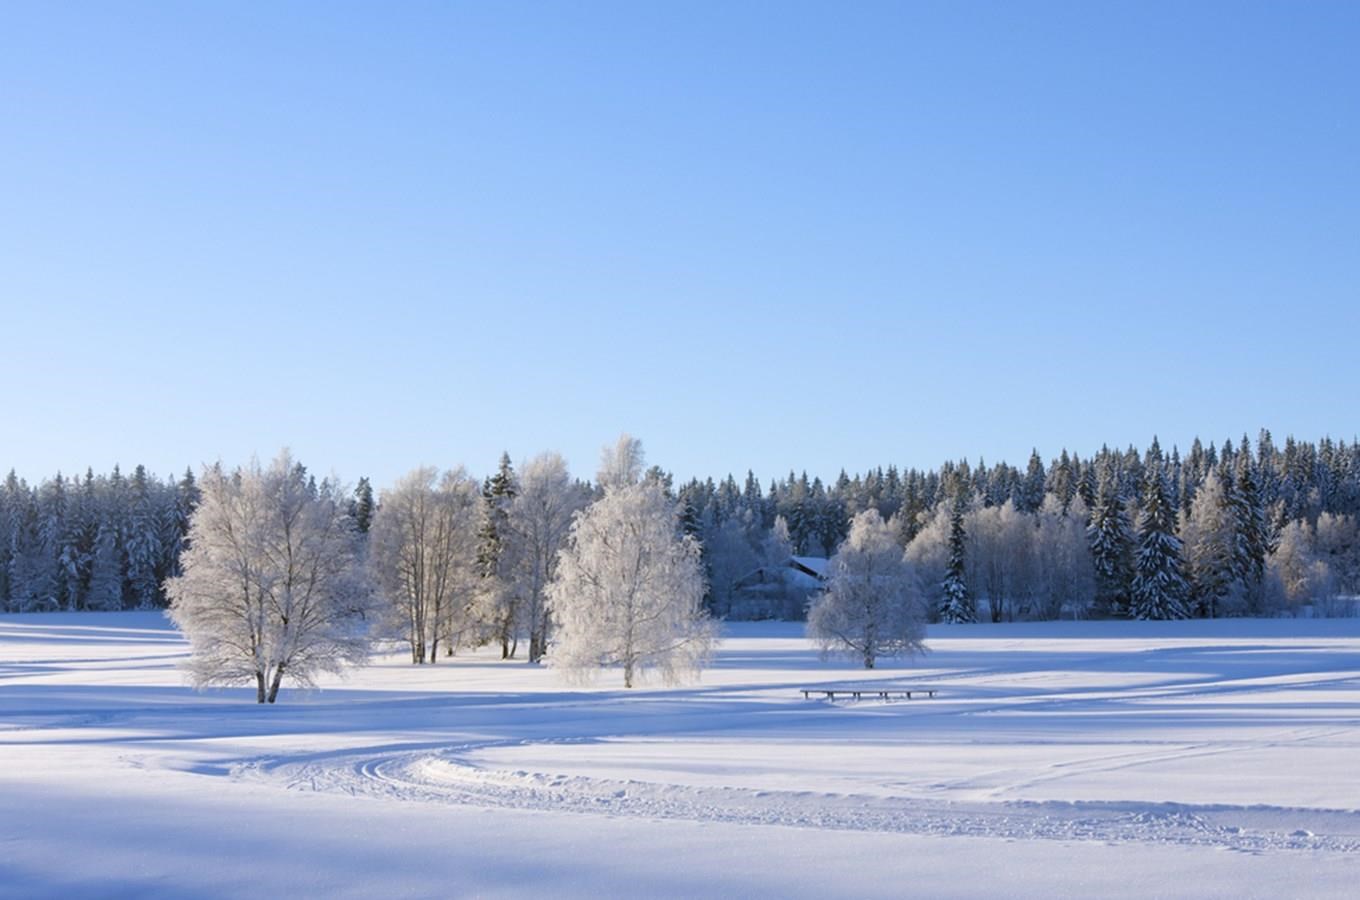 Karavanem od jara do zimy: Zimní Šluknovsko pěšky i na běžkách